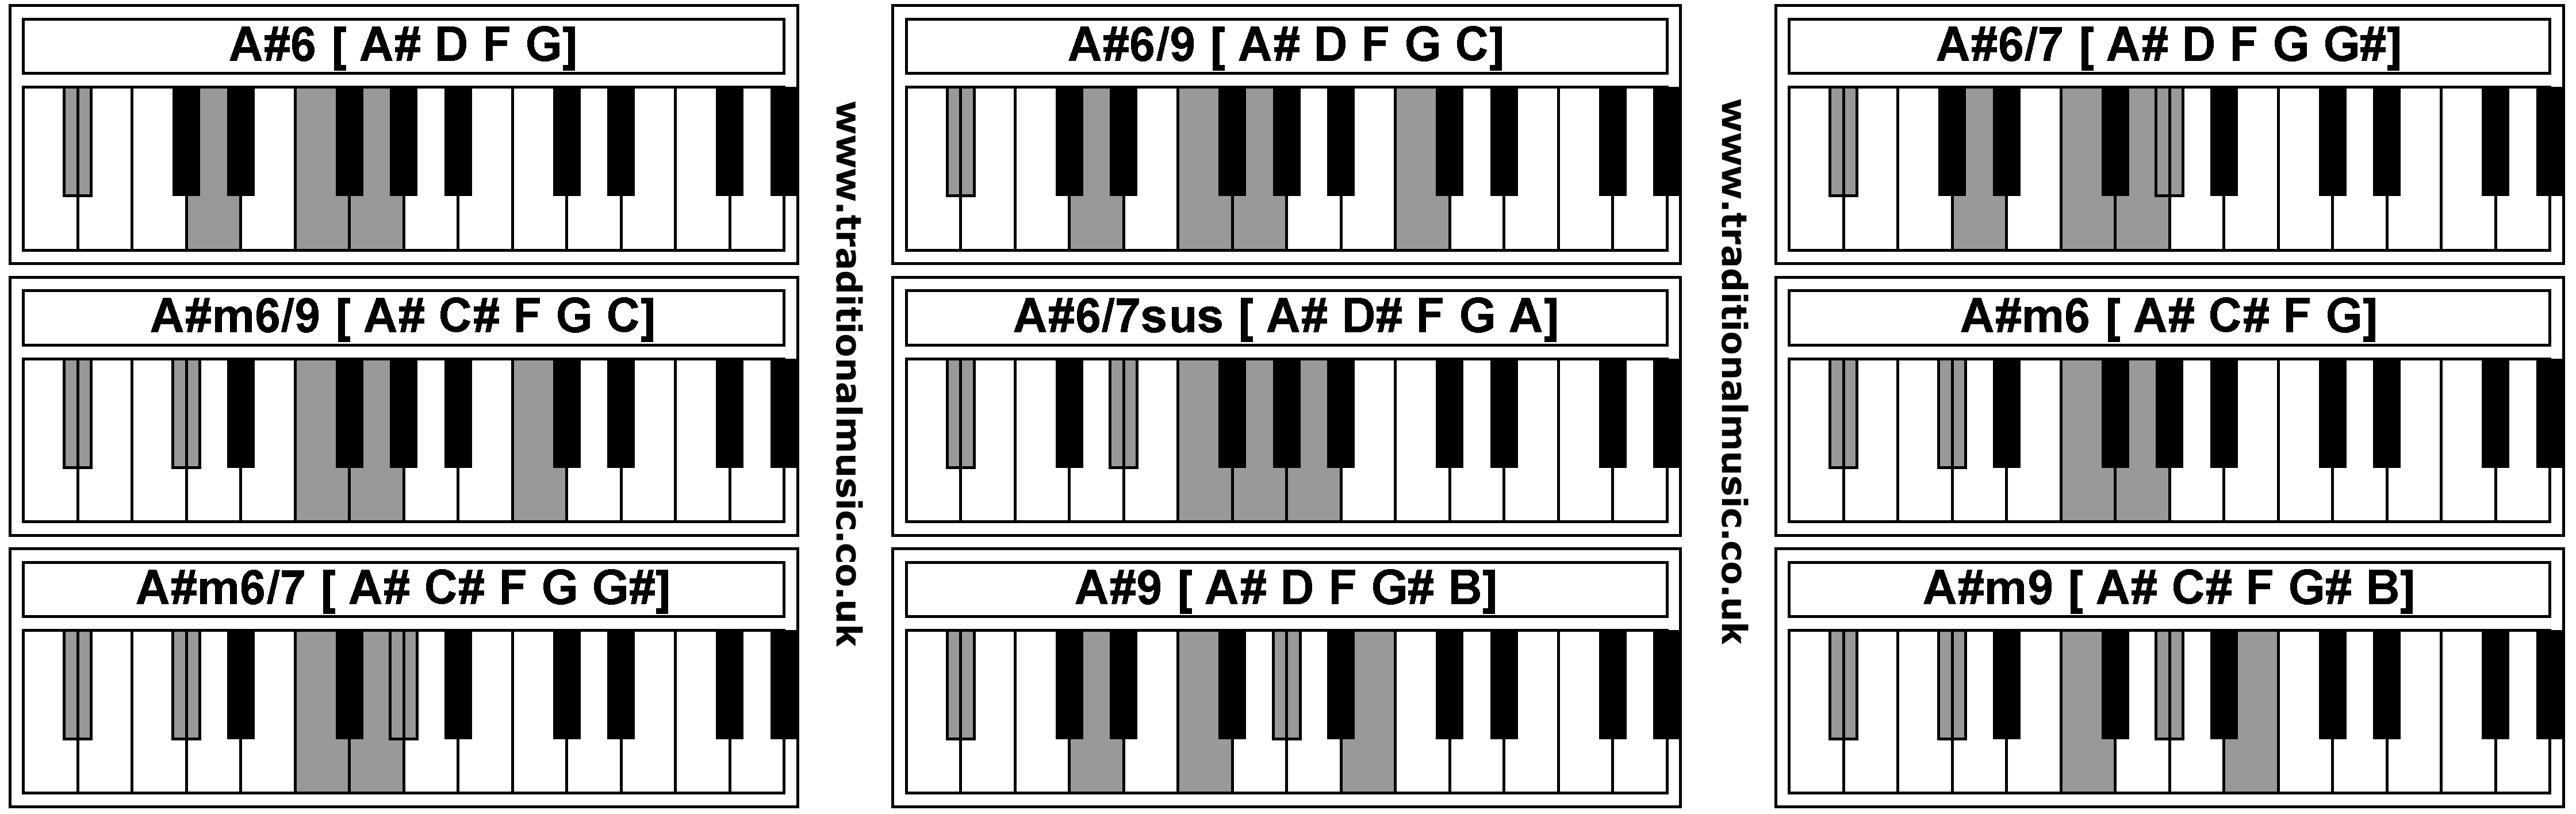 Piano Chords - A#6  A#6/9  A#6/7  A#m6/9  A#6/7sus  A#m6  A#m6/7  A#9  A#m9 